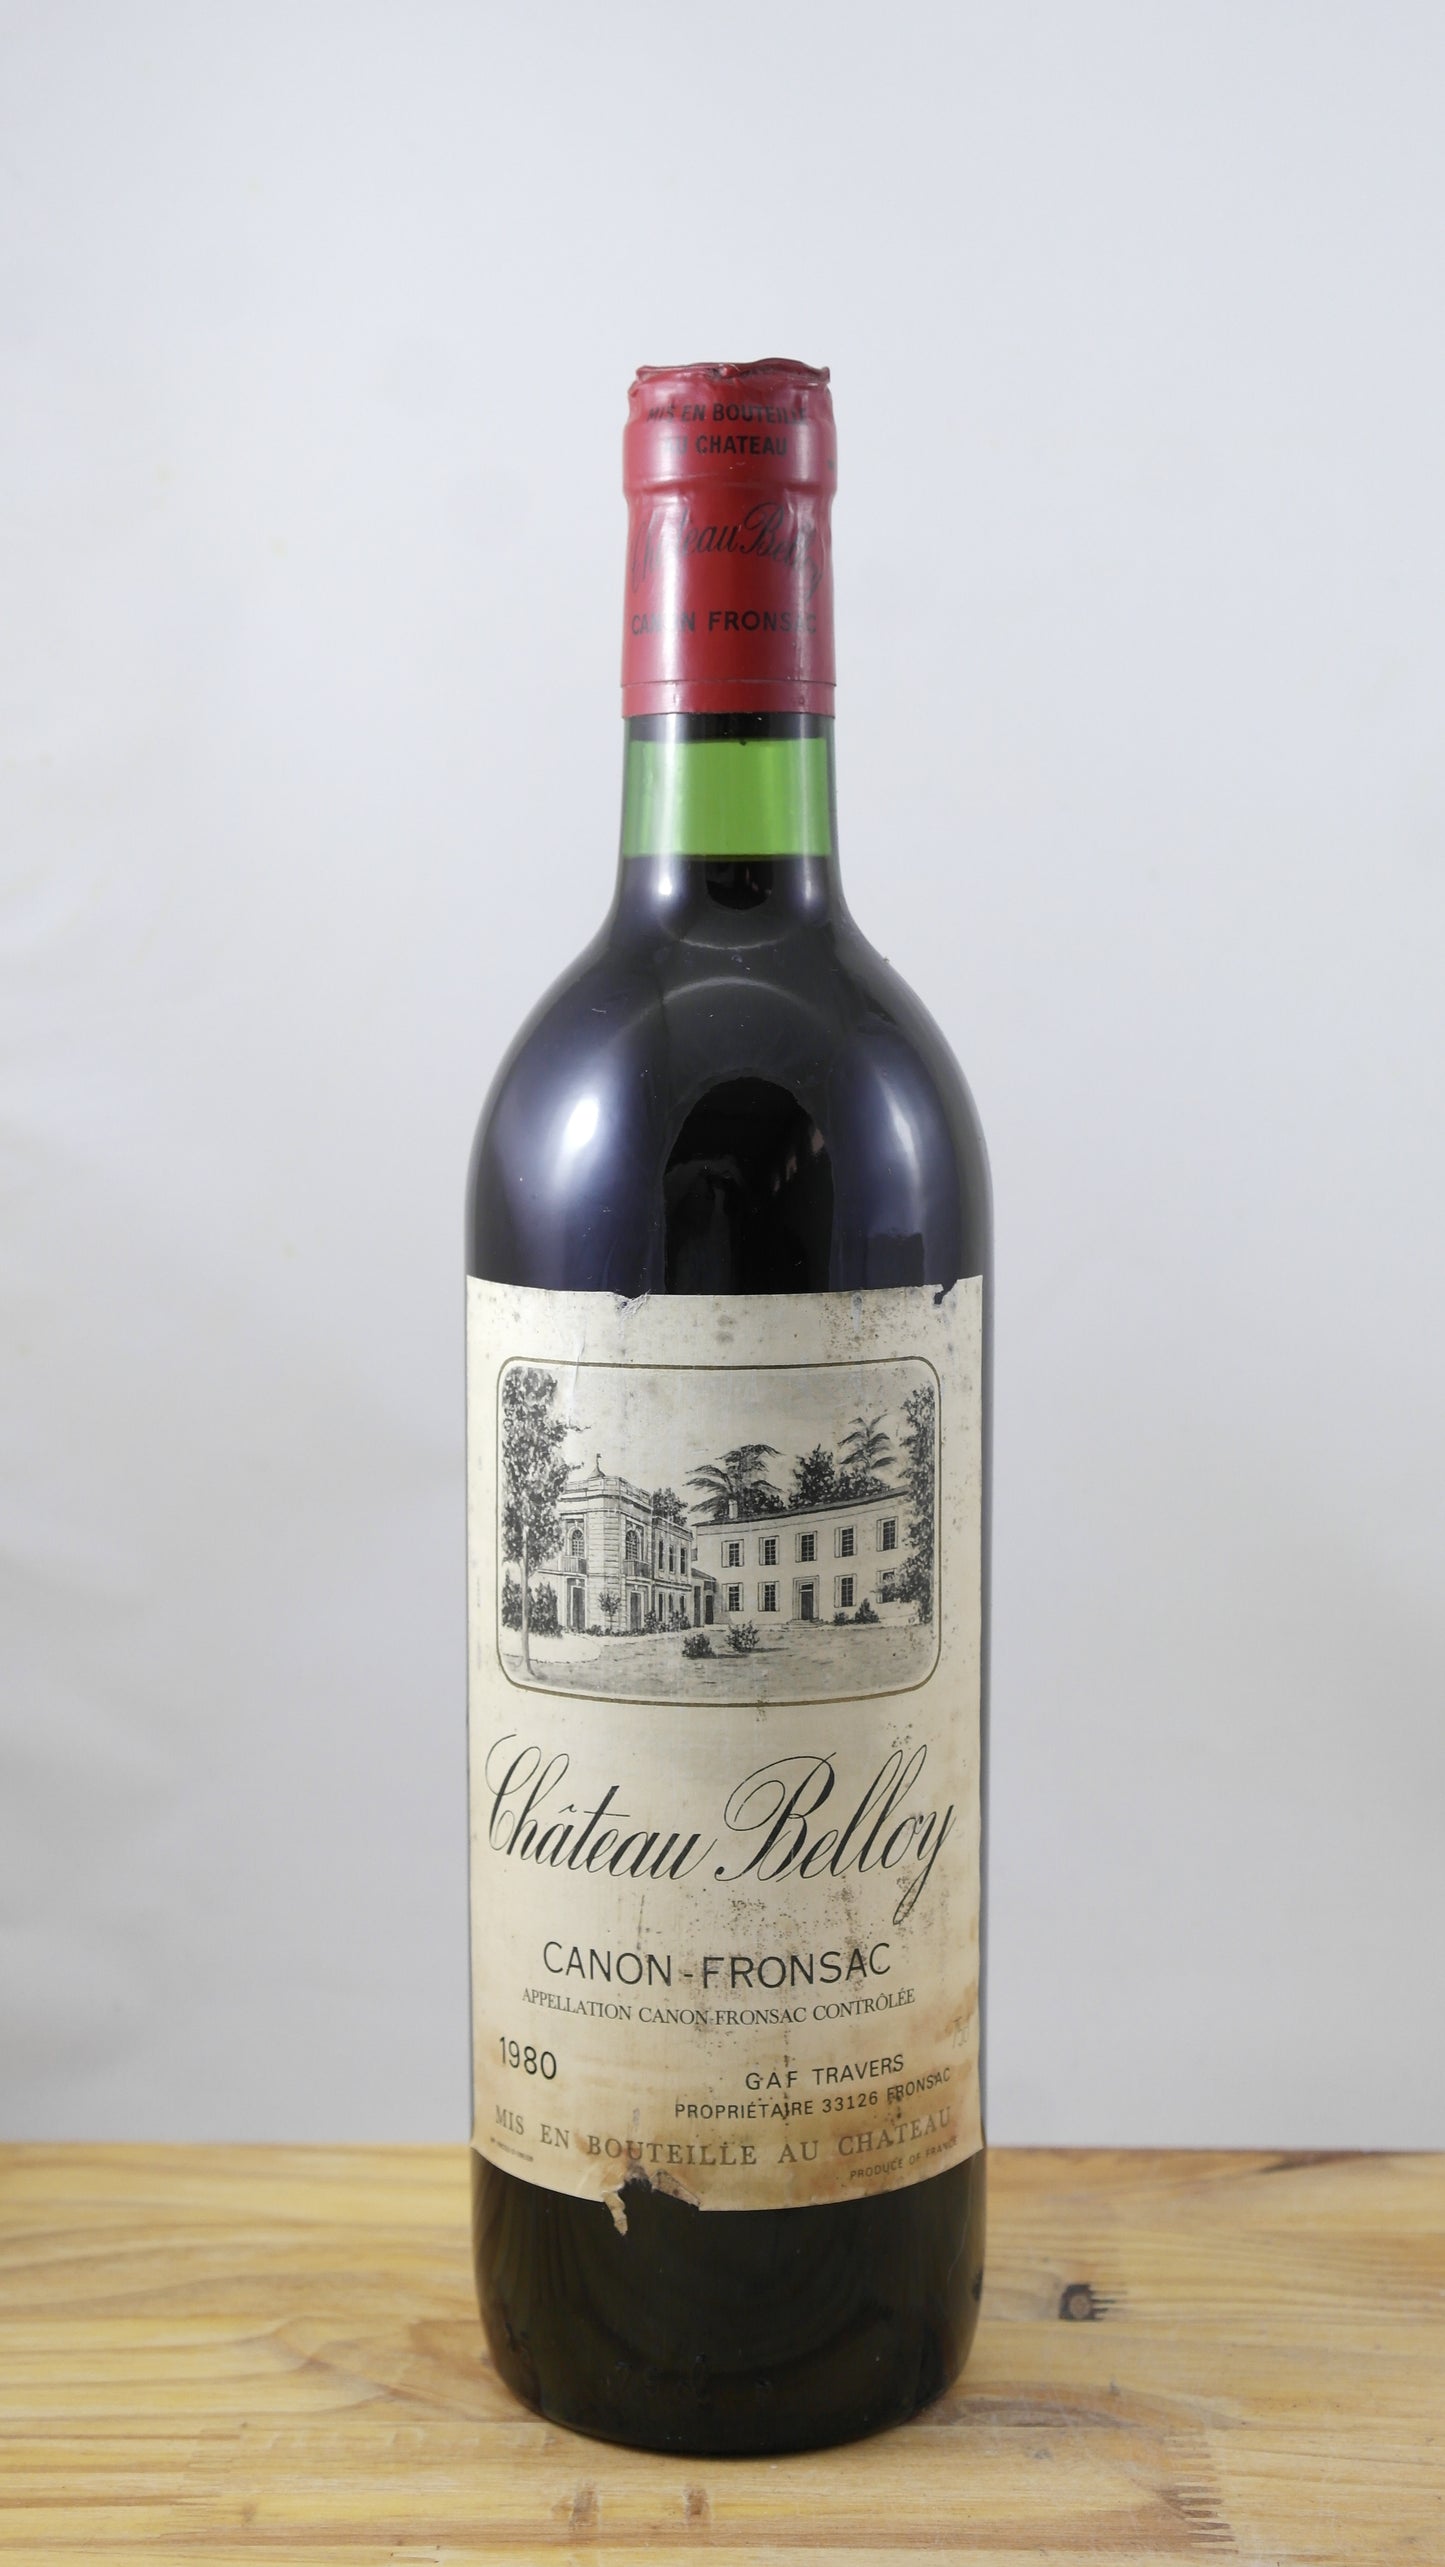 Château Belloy Vin 1980